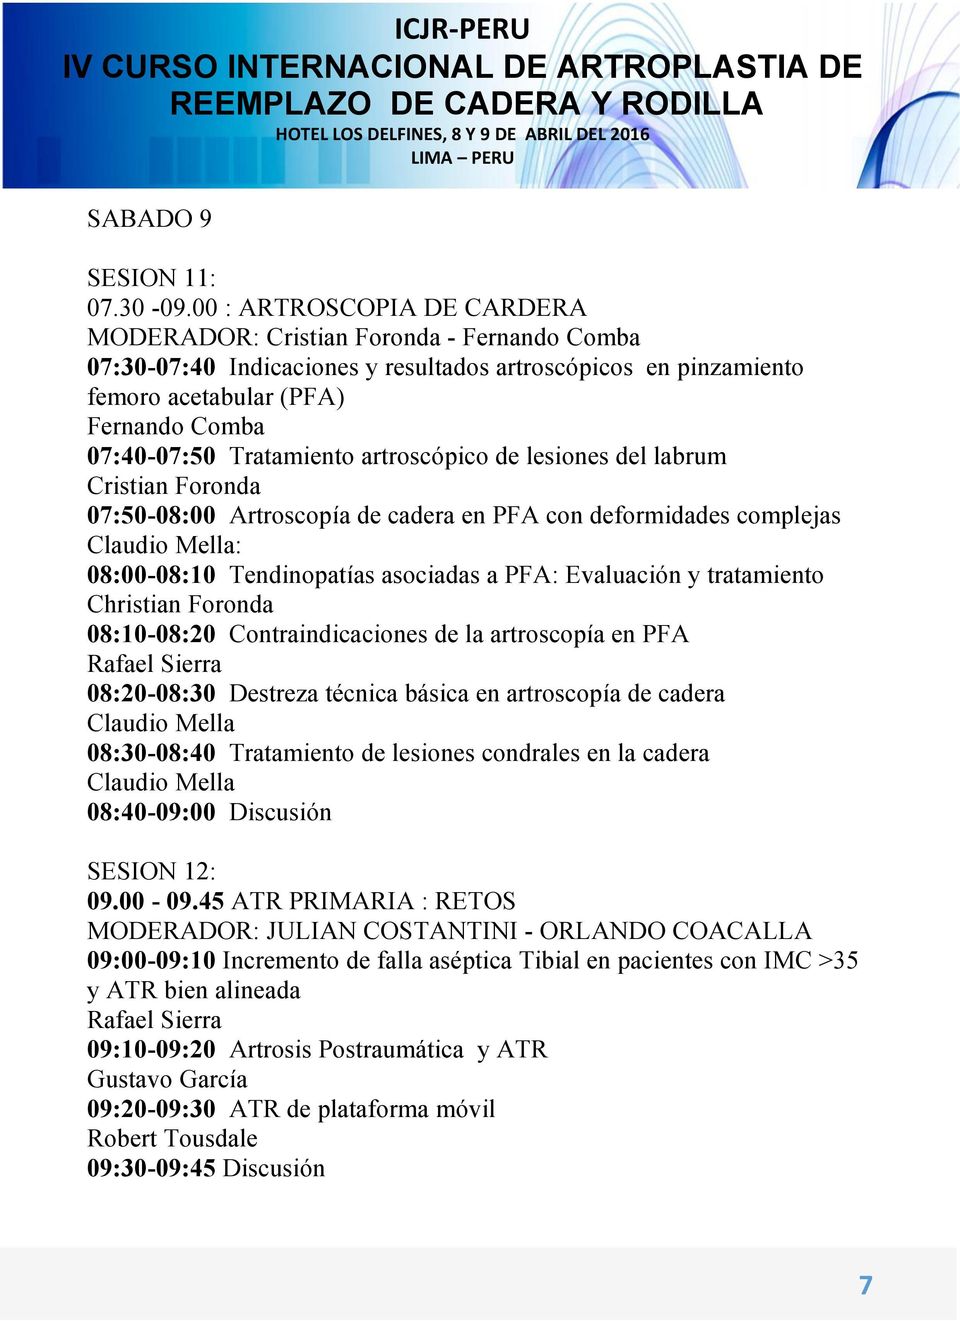 Tratamiento artroscópico de lesiones del labrum Cristian Foronda 07:50-08:00 Artroscopía de cadera en PFA con deformidades complejas Claudio Mella: 08:00-08:10 Tendinopatías asociadas a PFA: